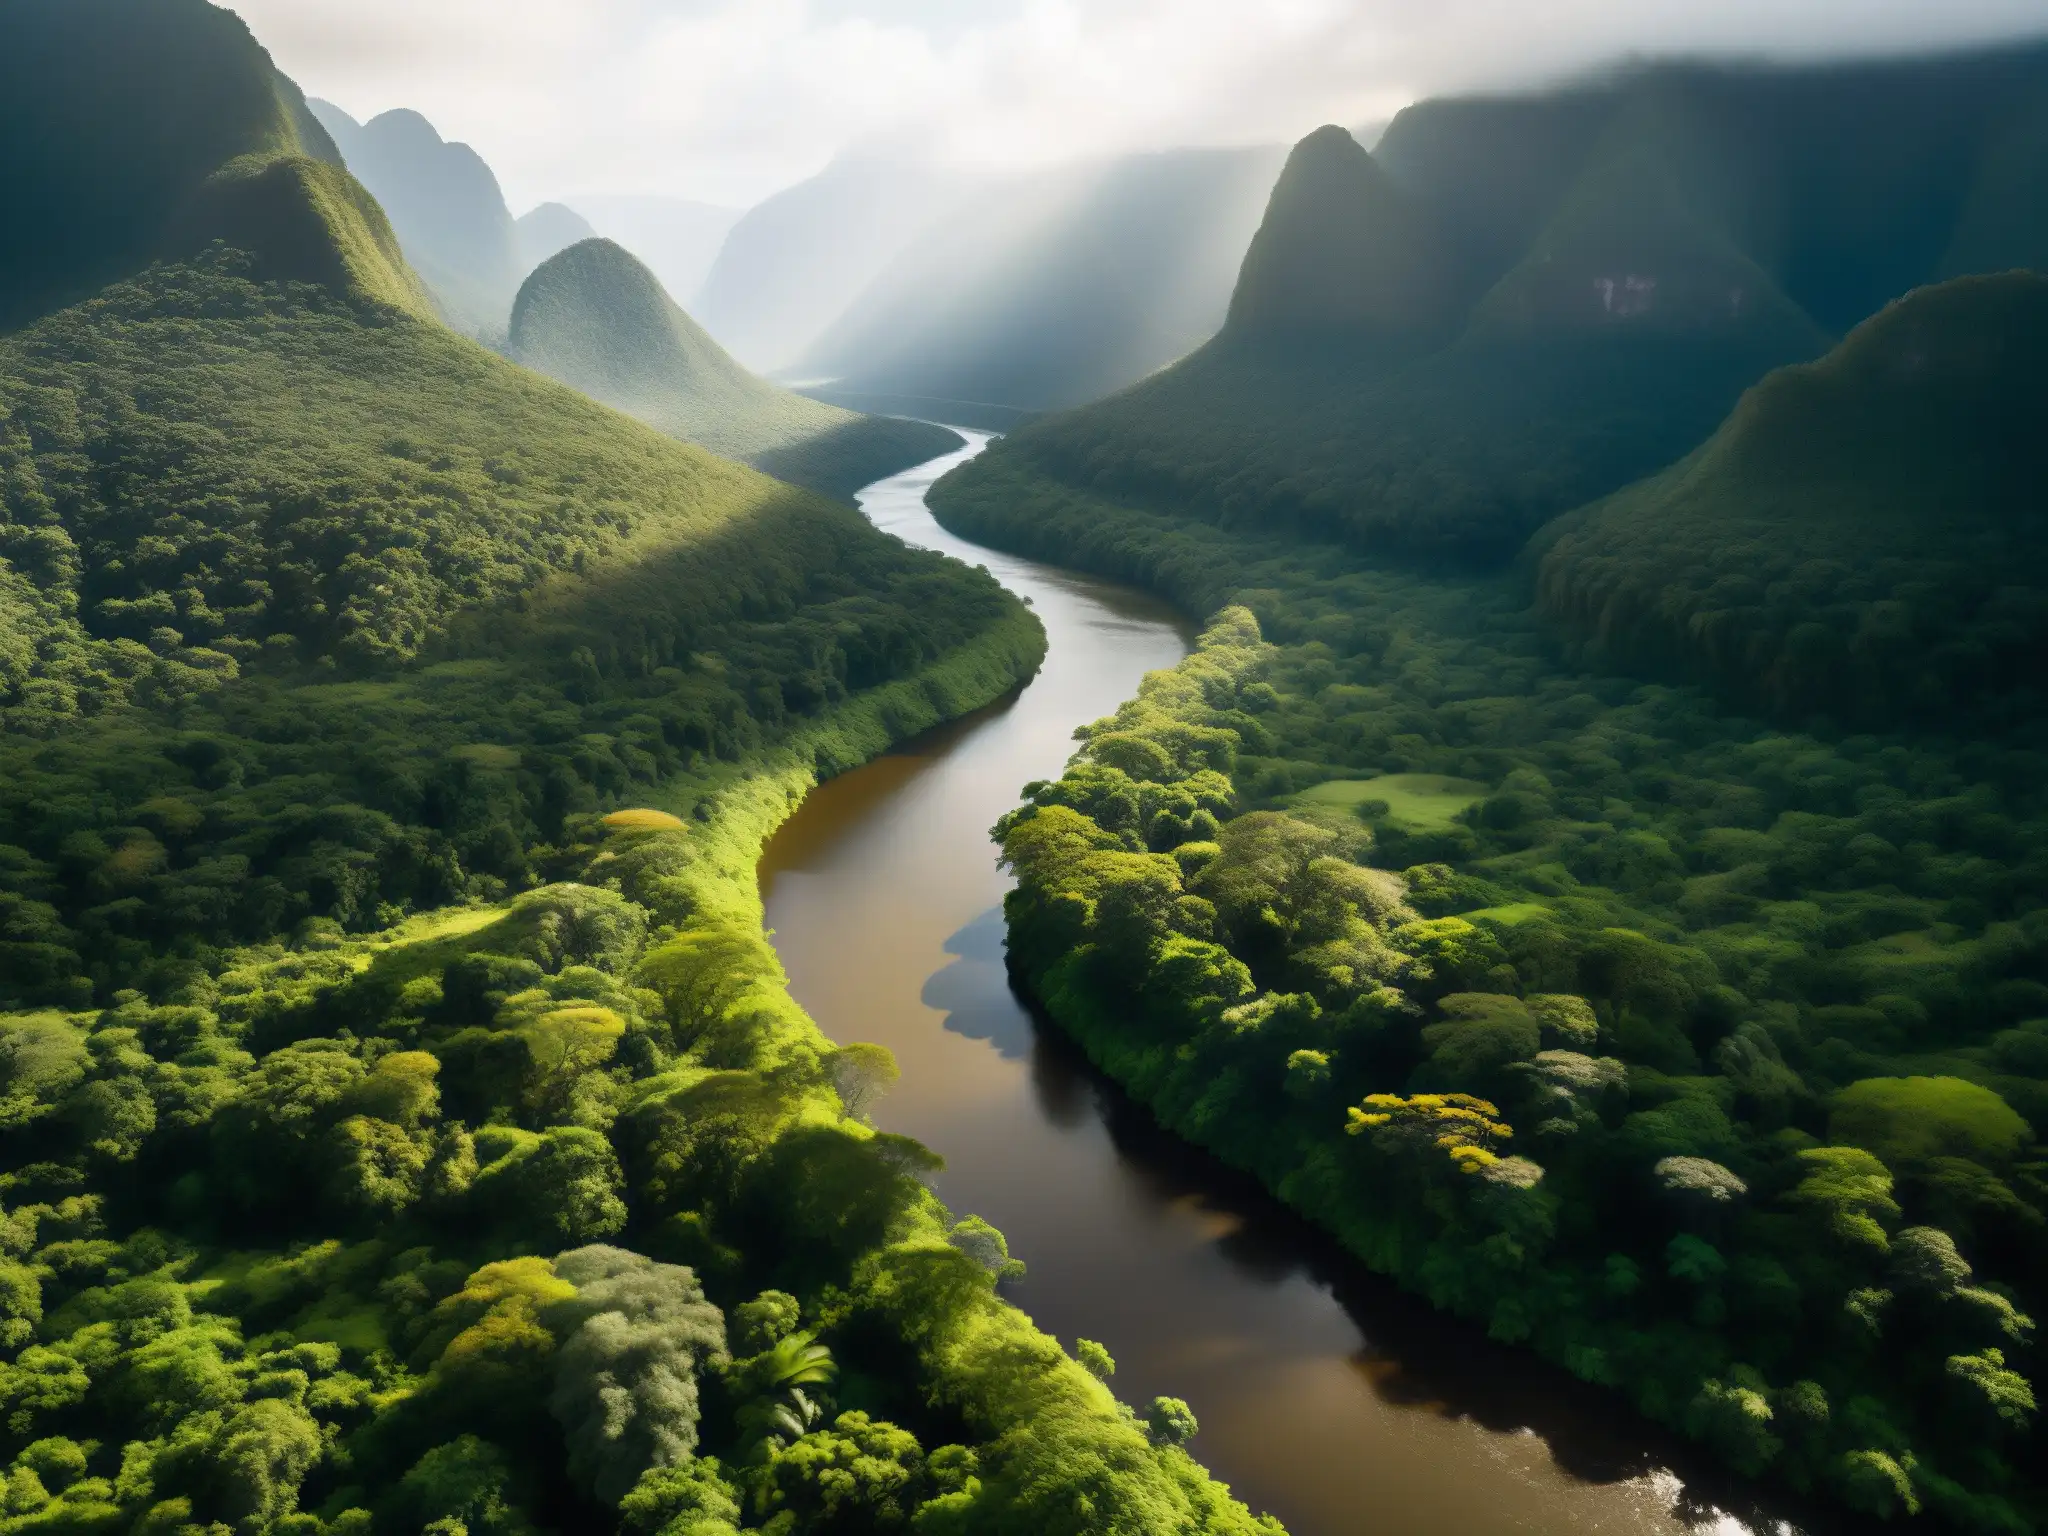 El sol filtra a través del dosel en la densa selva venezolana, creando sombras en el río Taguapire